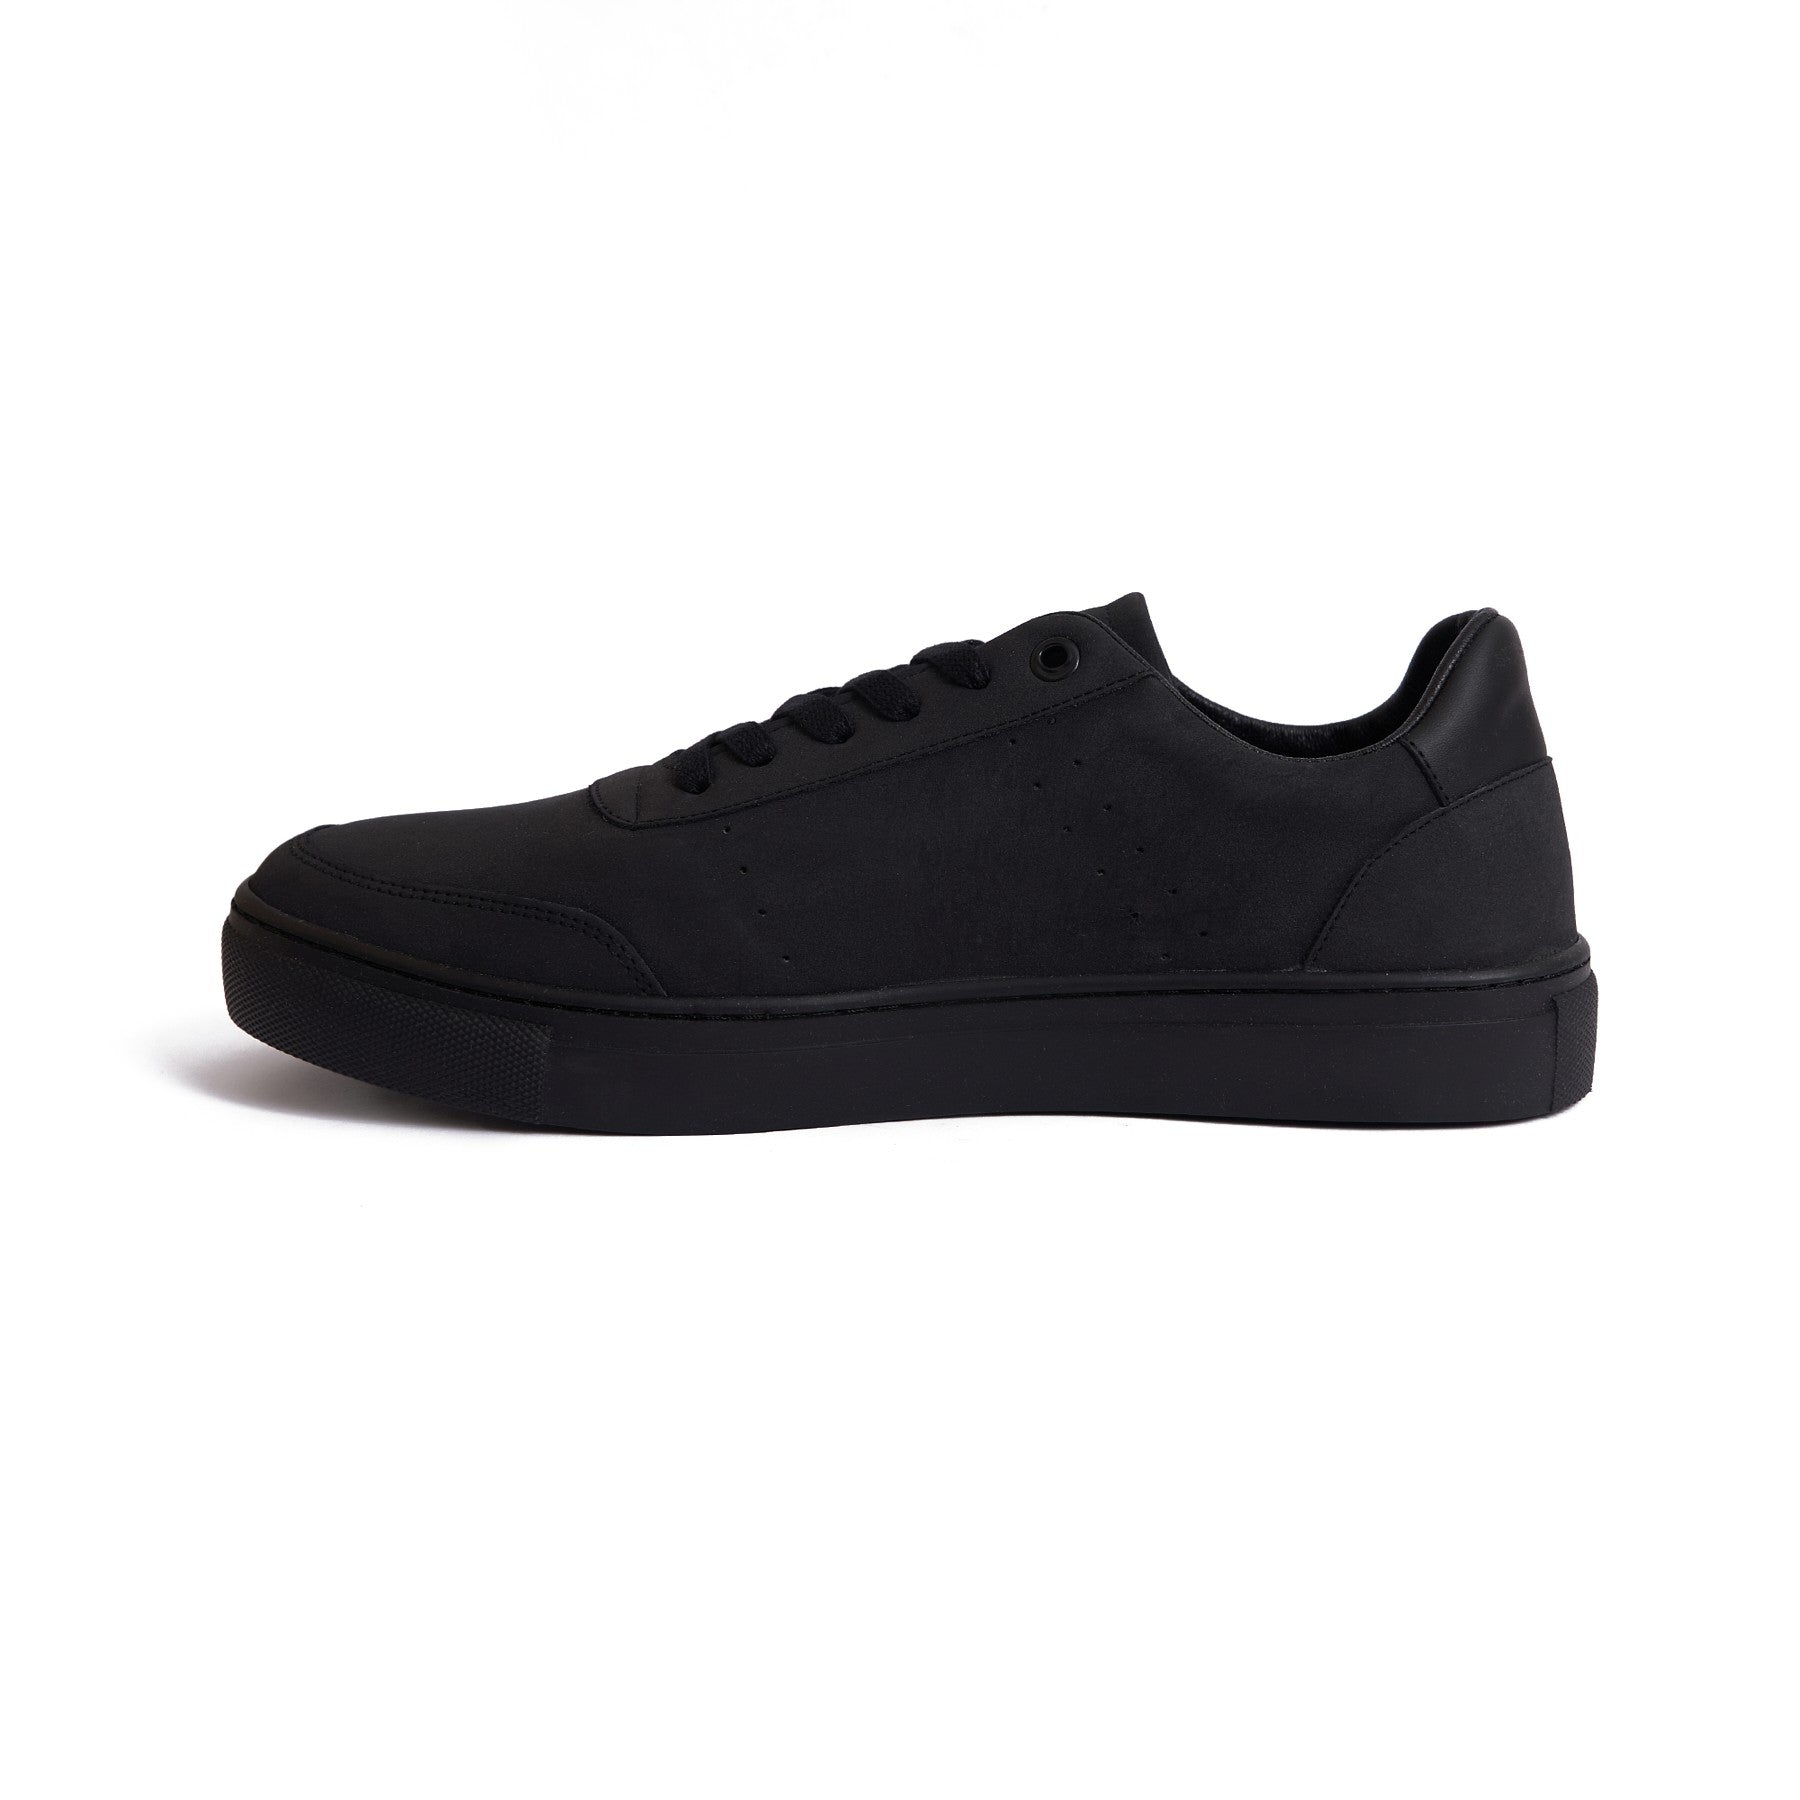 V762 Black Sneaker - Modern Men's Fashion Footwear -3